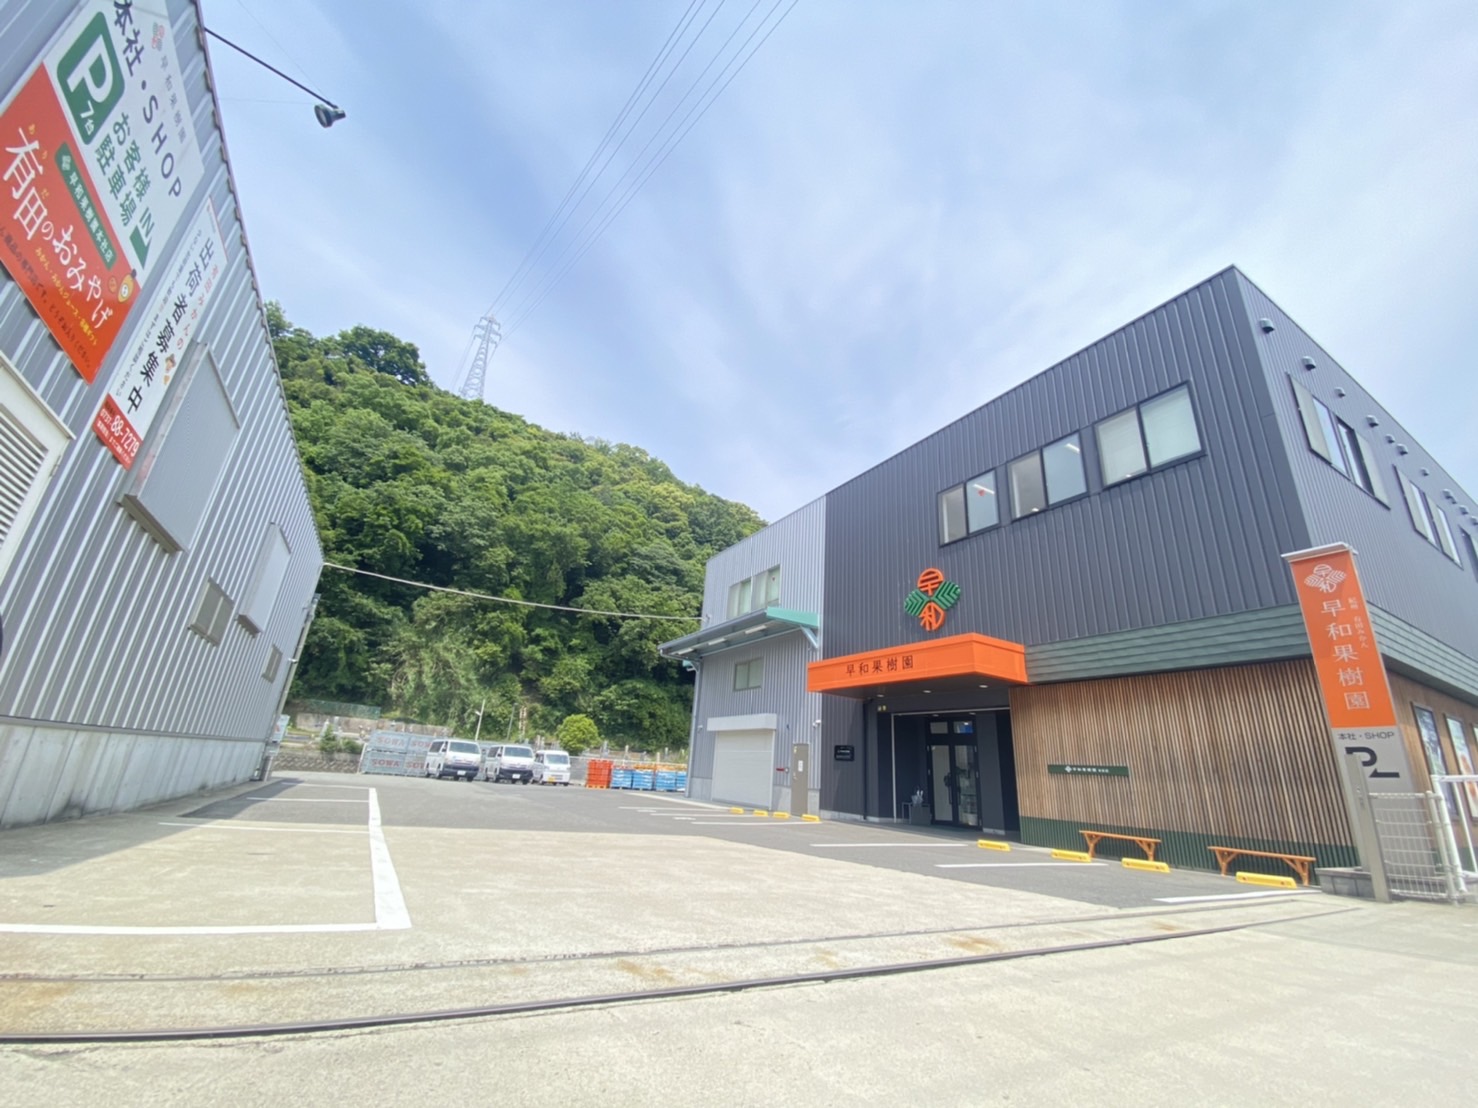 早和果樹園本社店の入り口すぐに7台設置された駐車場